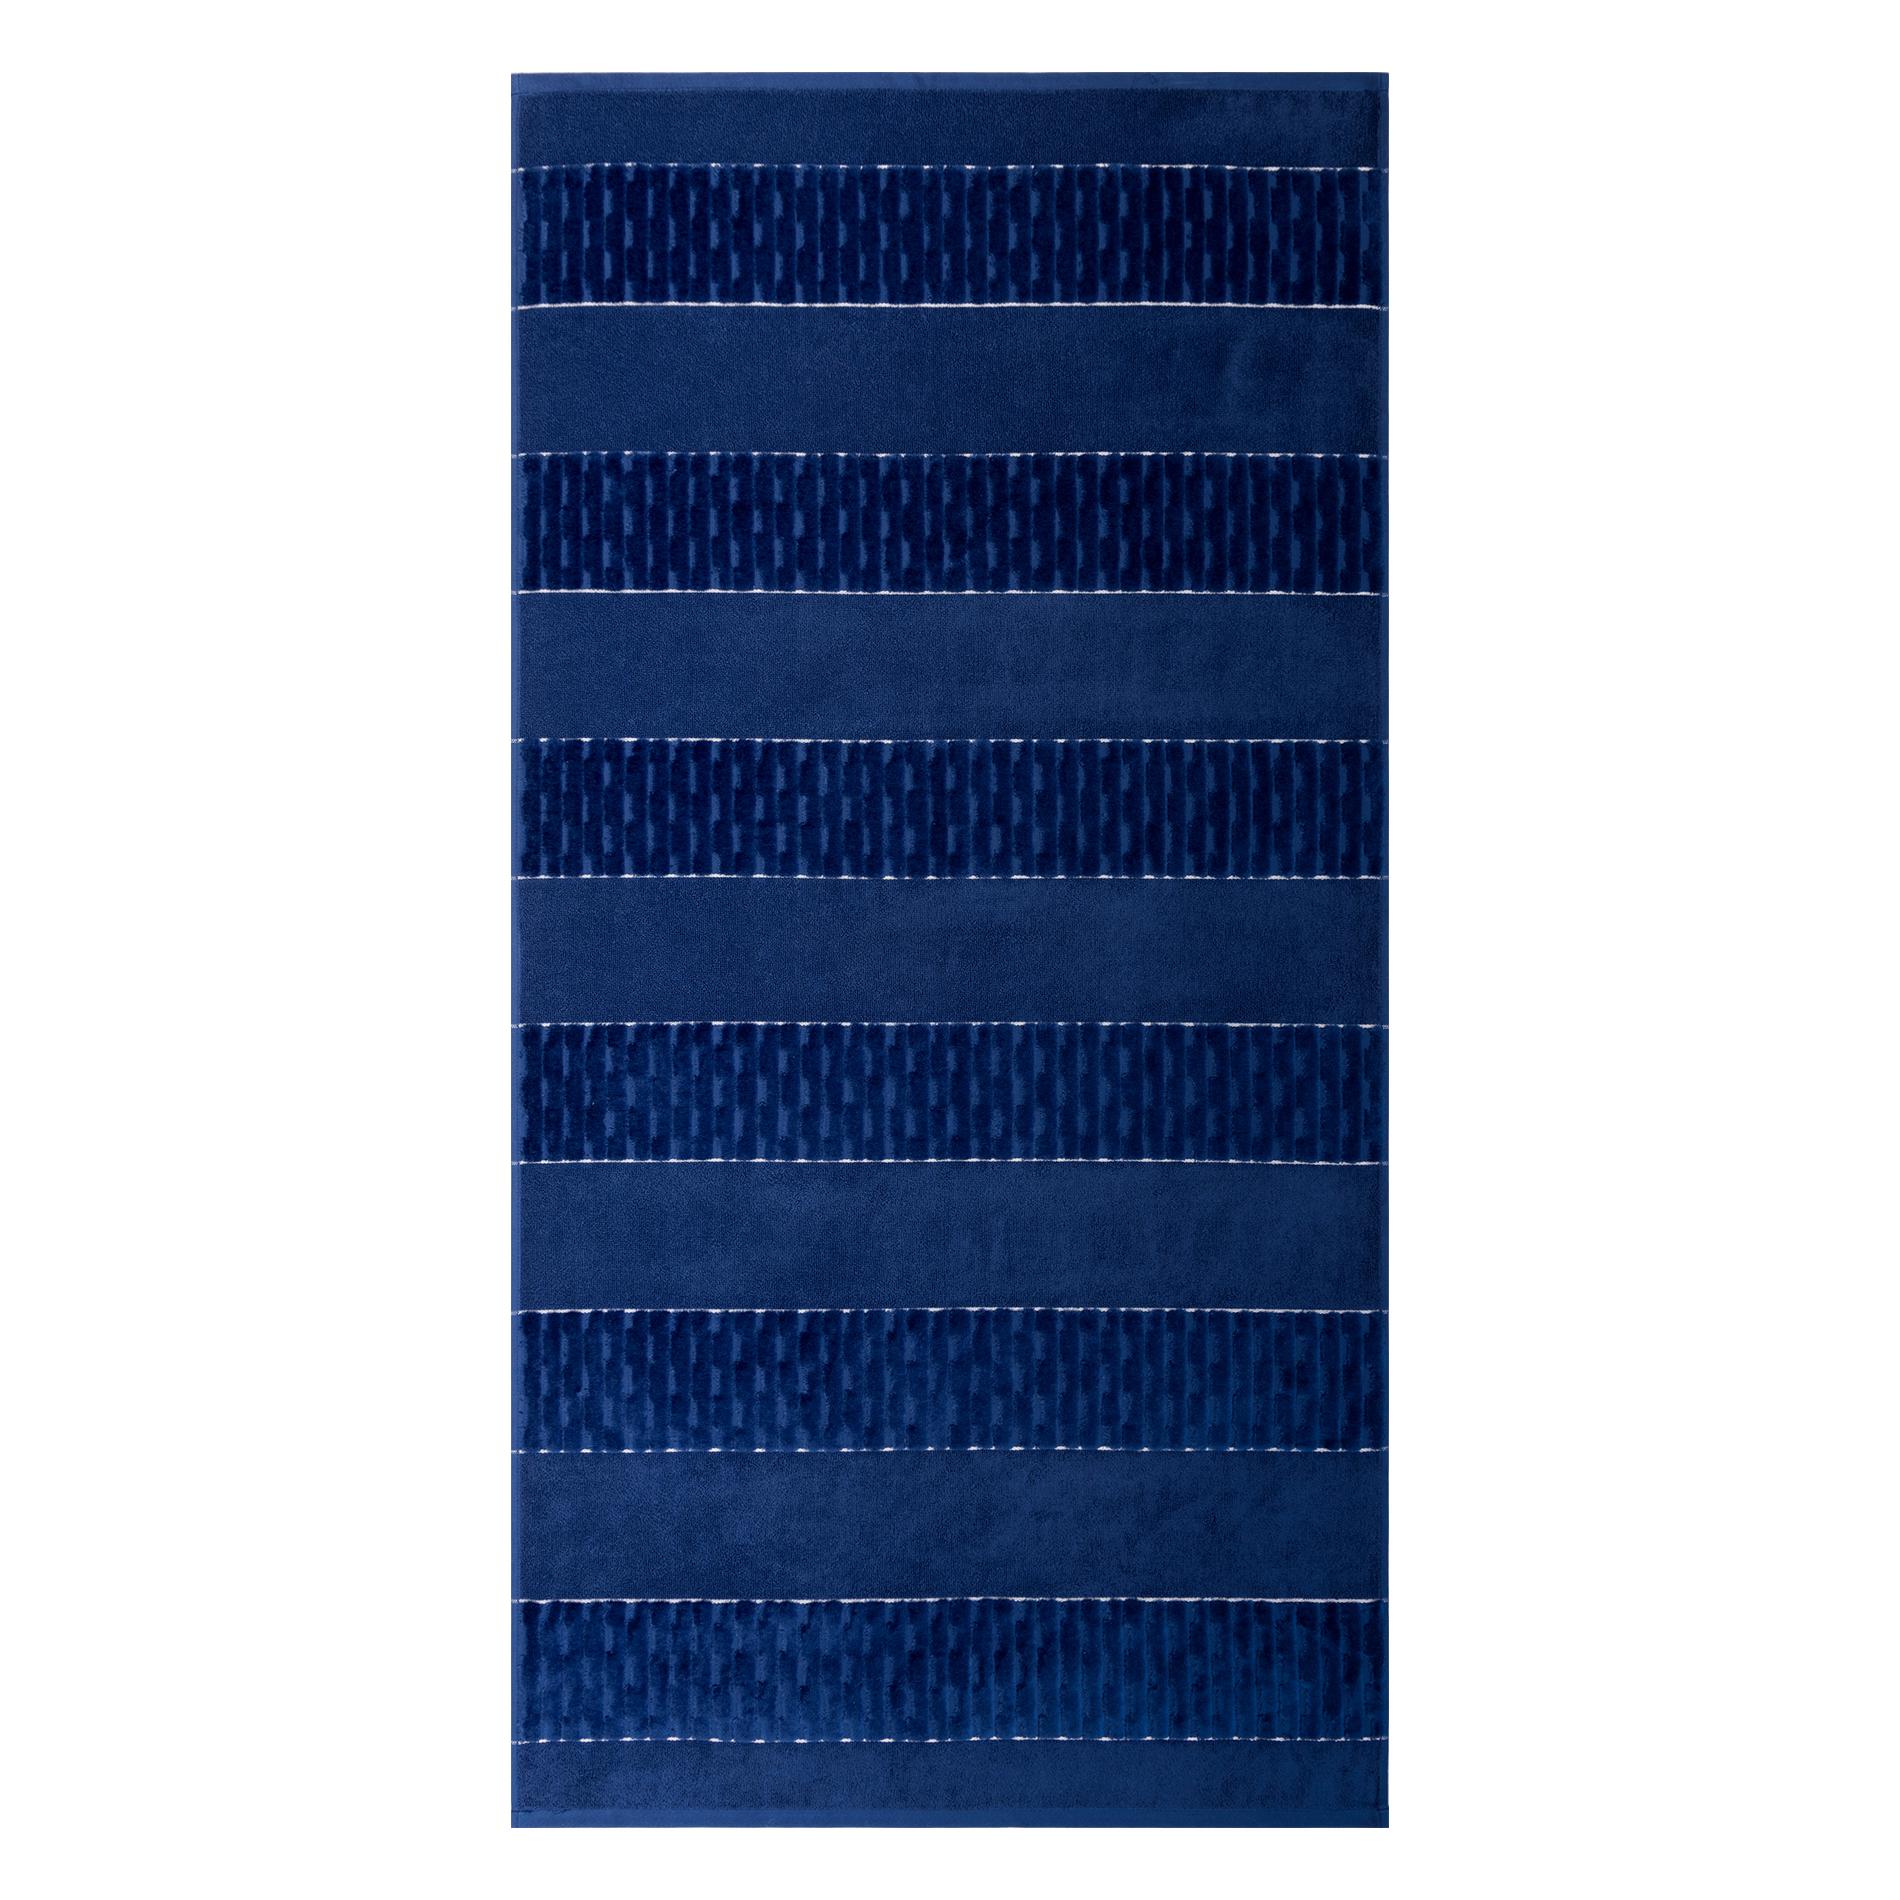 Махровое полотенце Cleanelly Esteta синее 70х140 см полотенце классик темно синий р 50х90